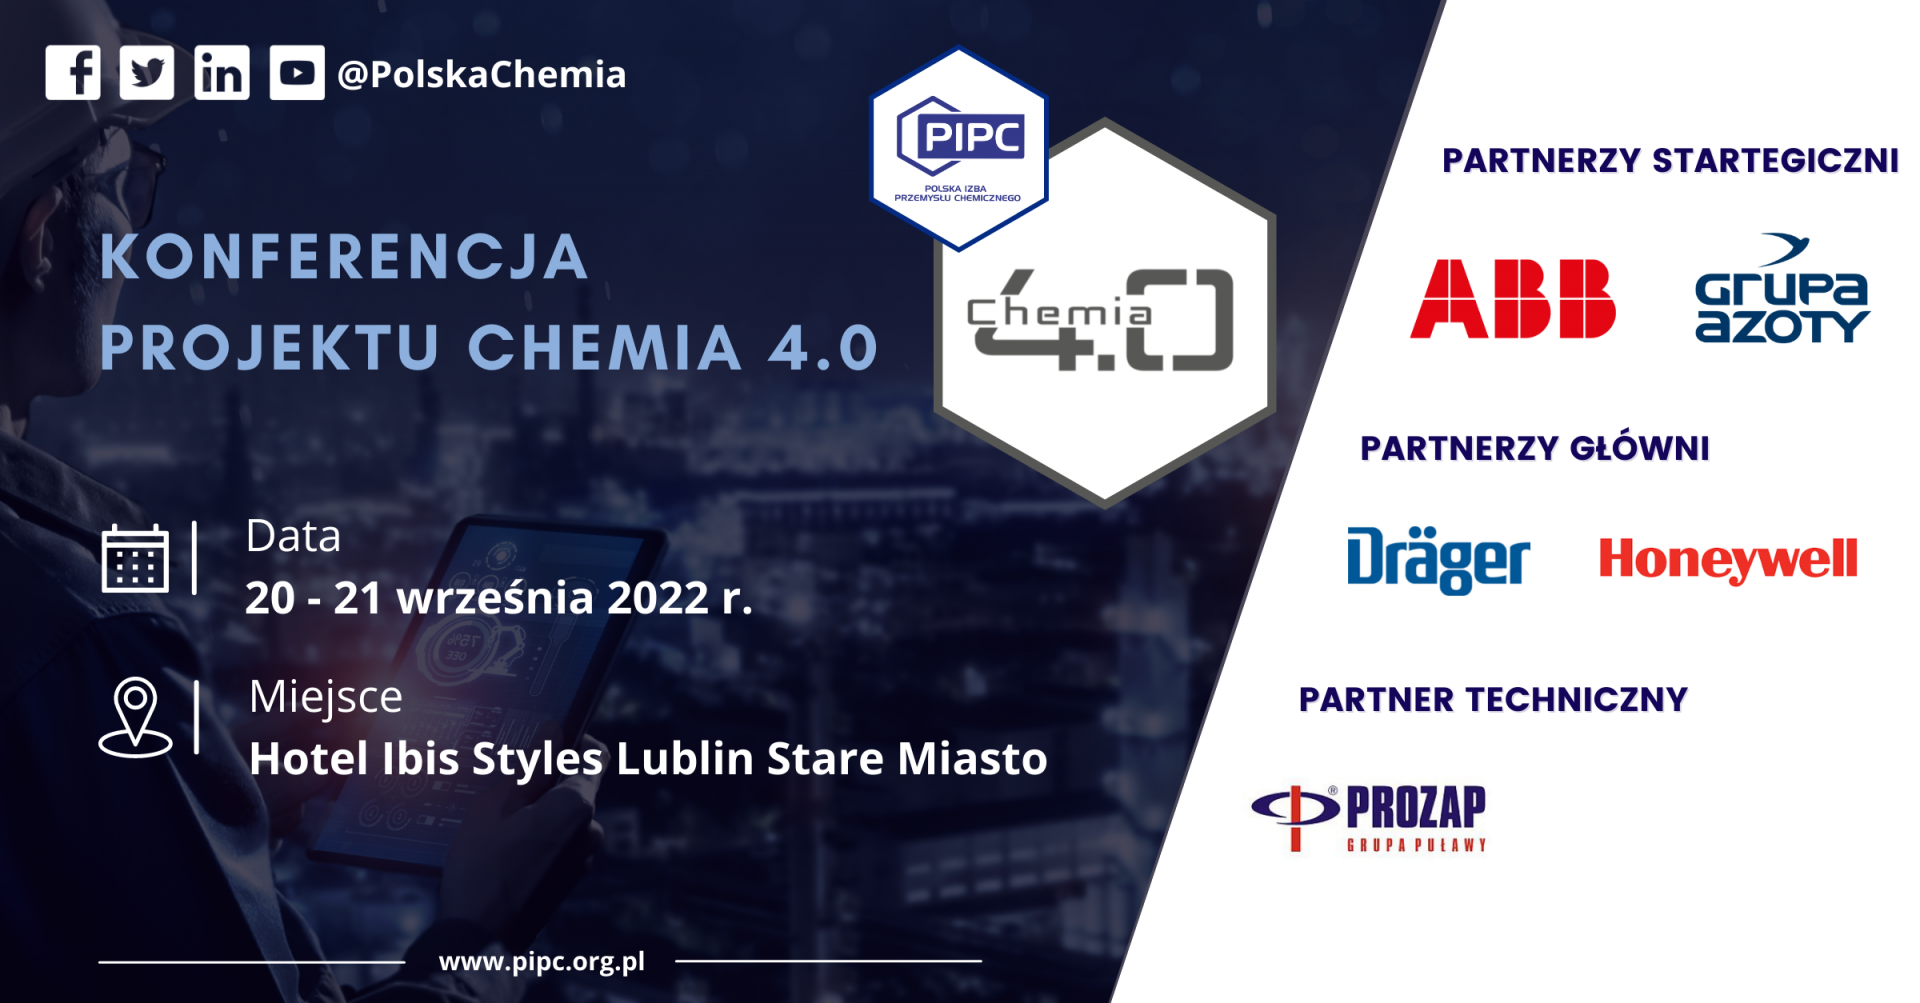 Konferencja Projektu Chemia 4.0 już 20-21 września 2022 r. - ZAREJESTRUJ SIĘ!